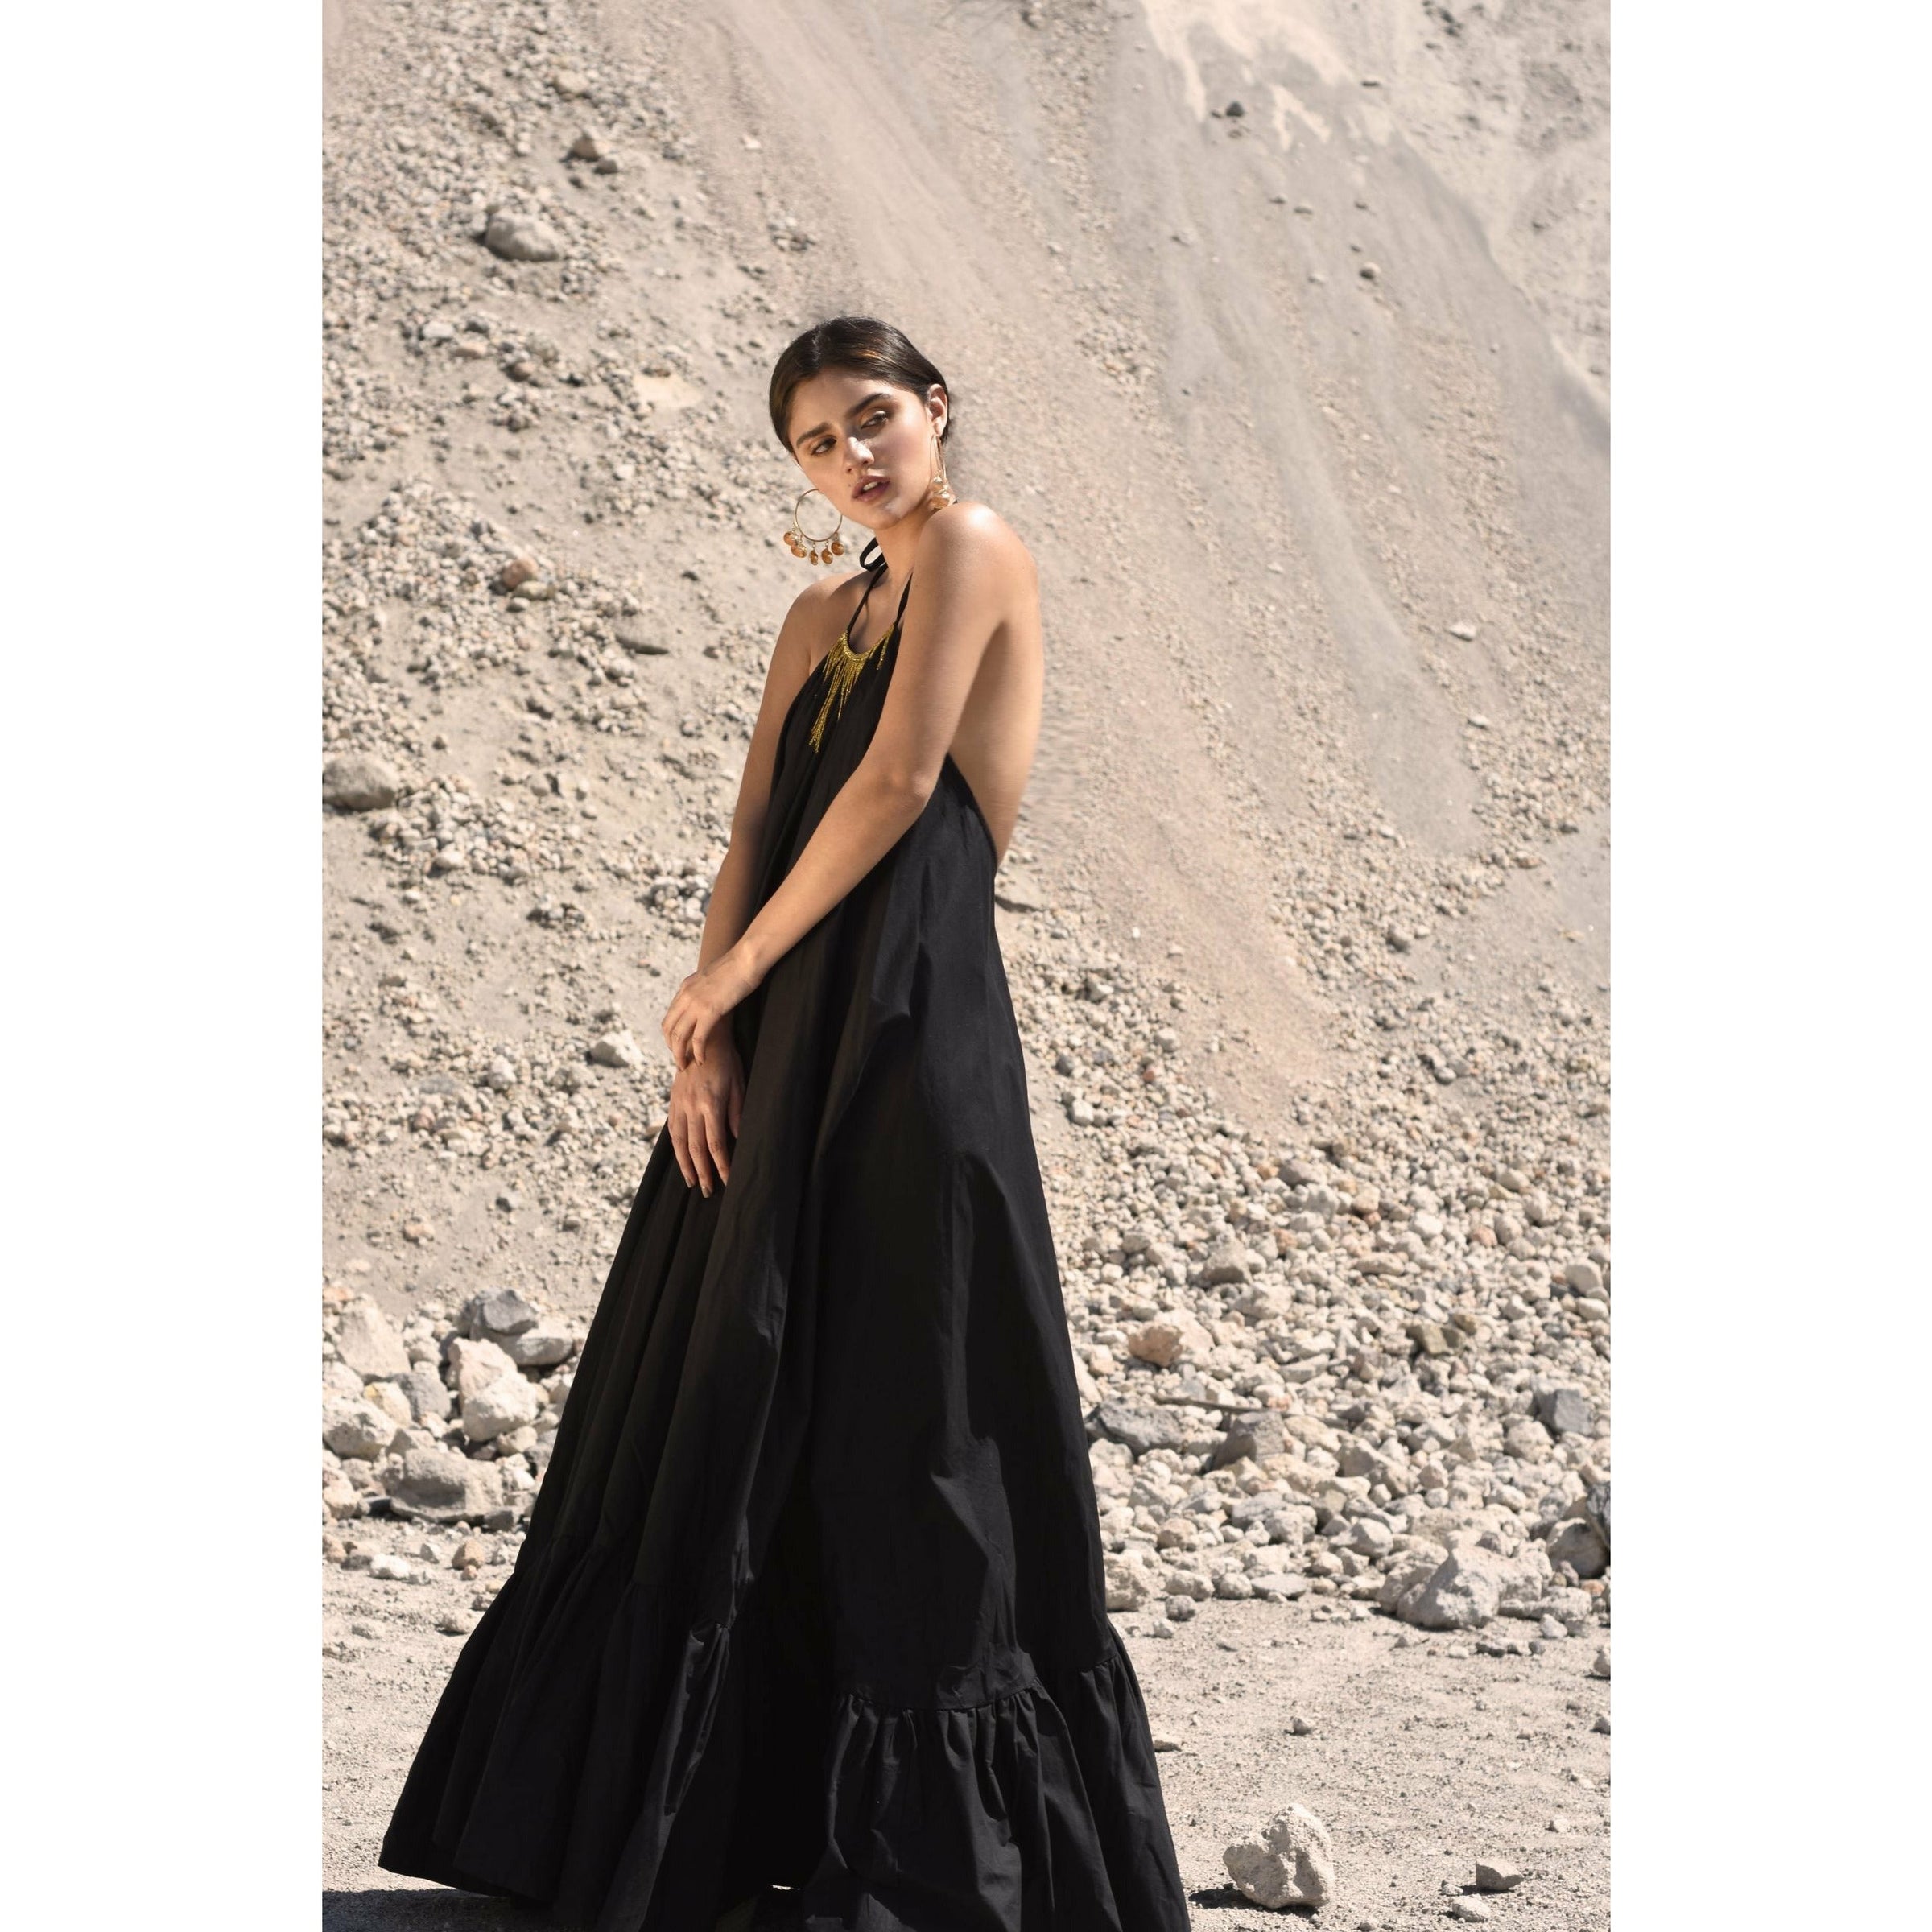 Black desert dress Dresses Morena del Rey 